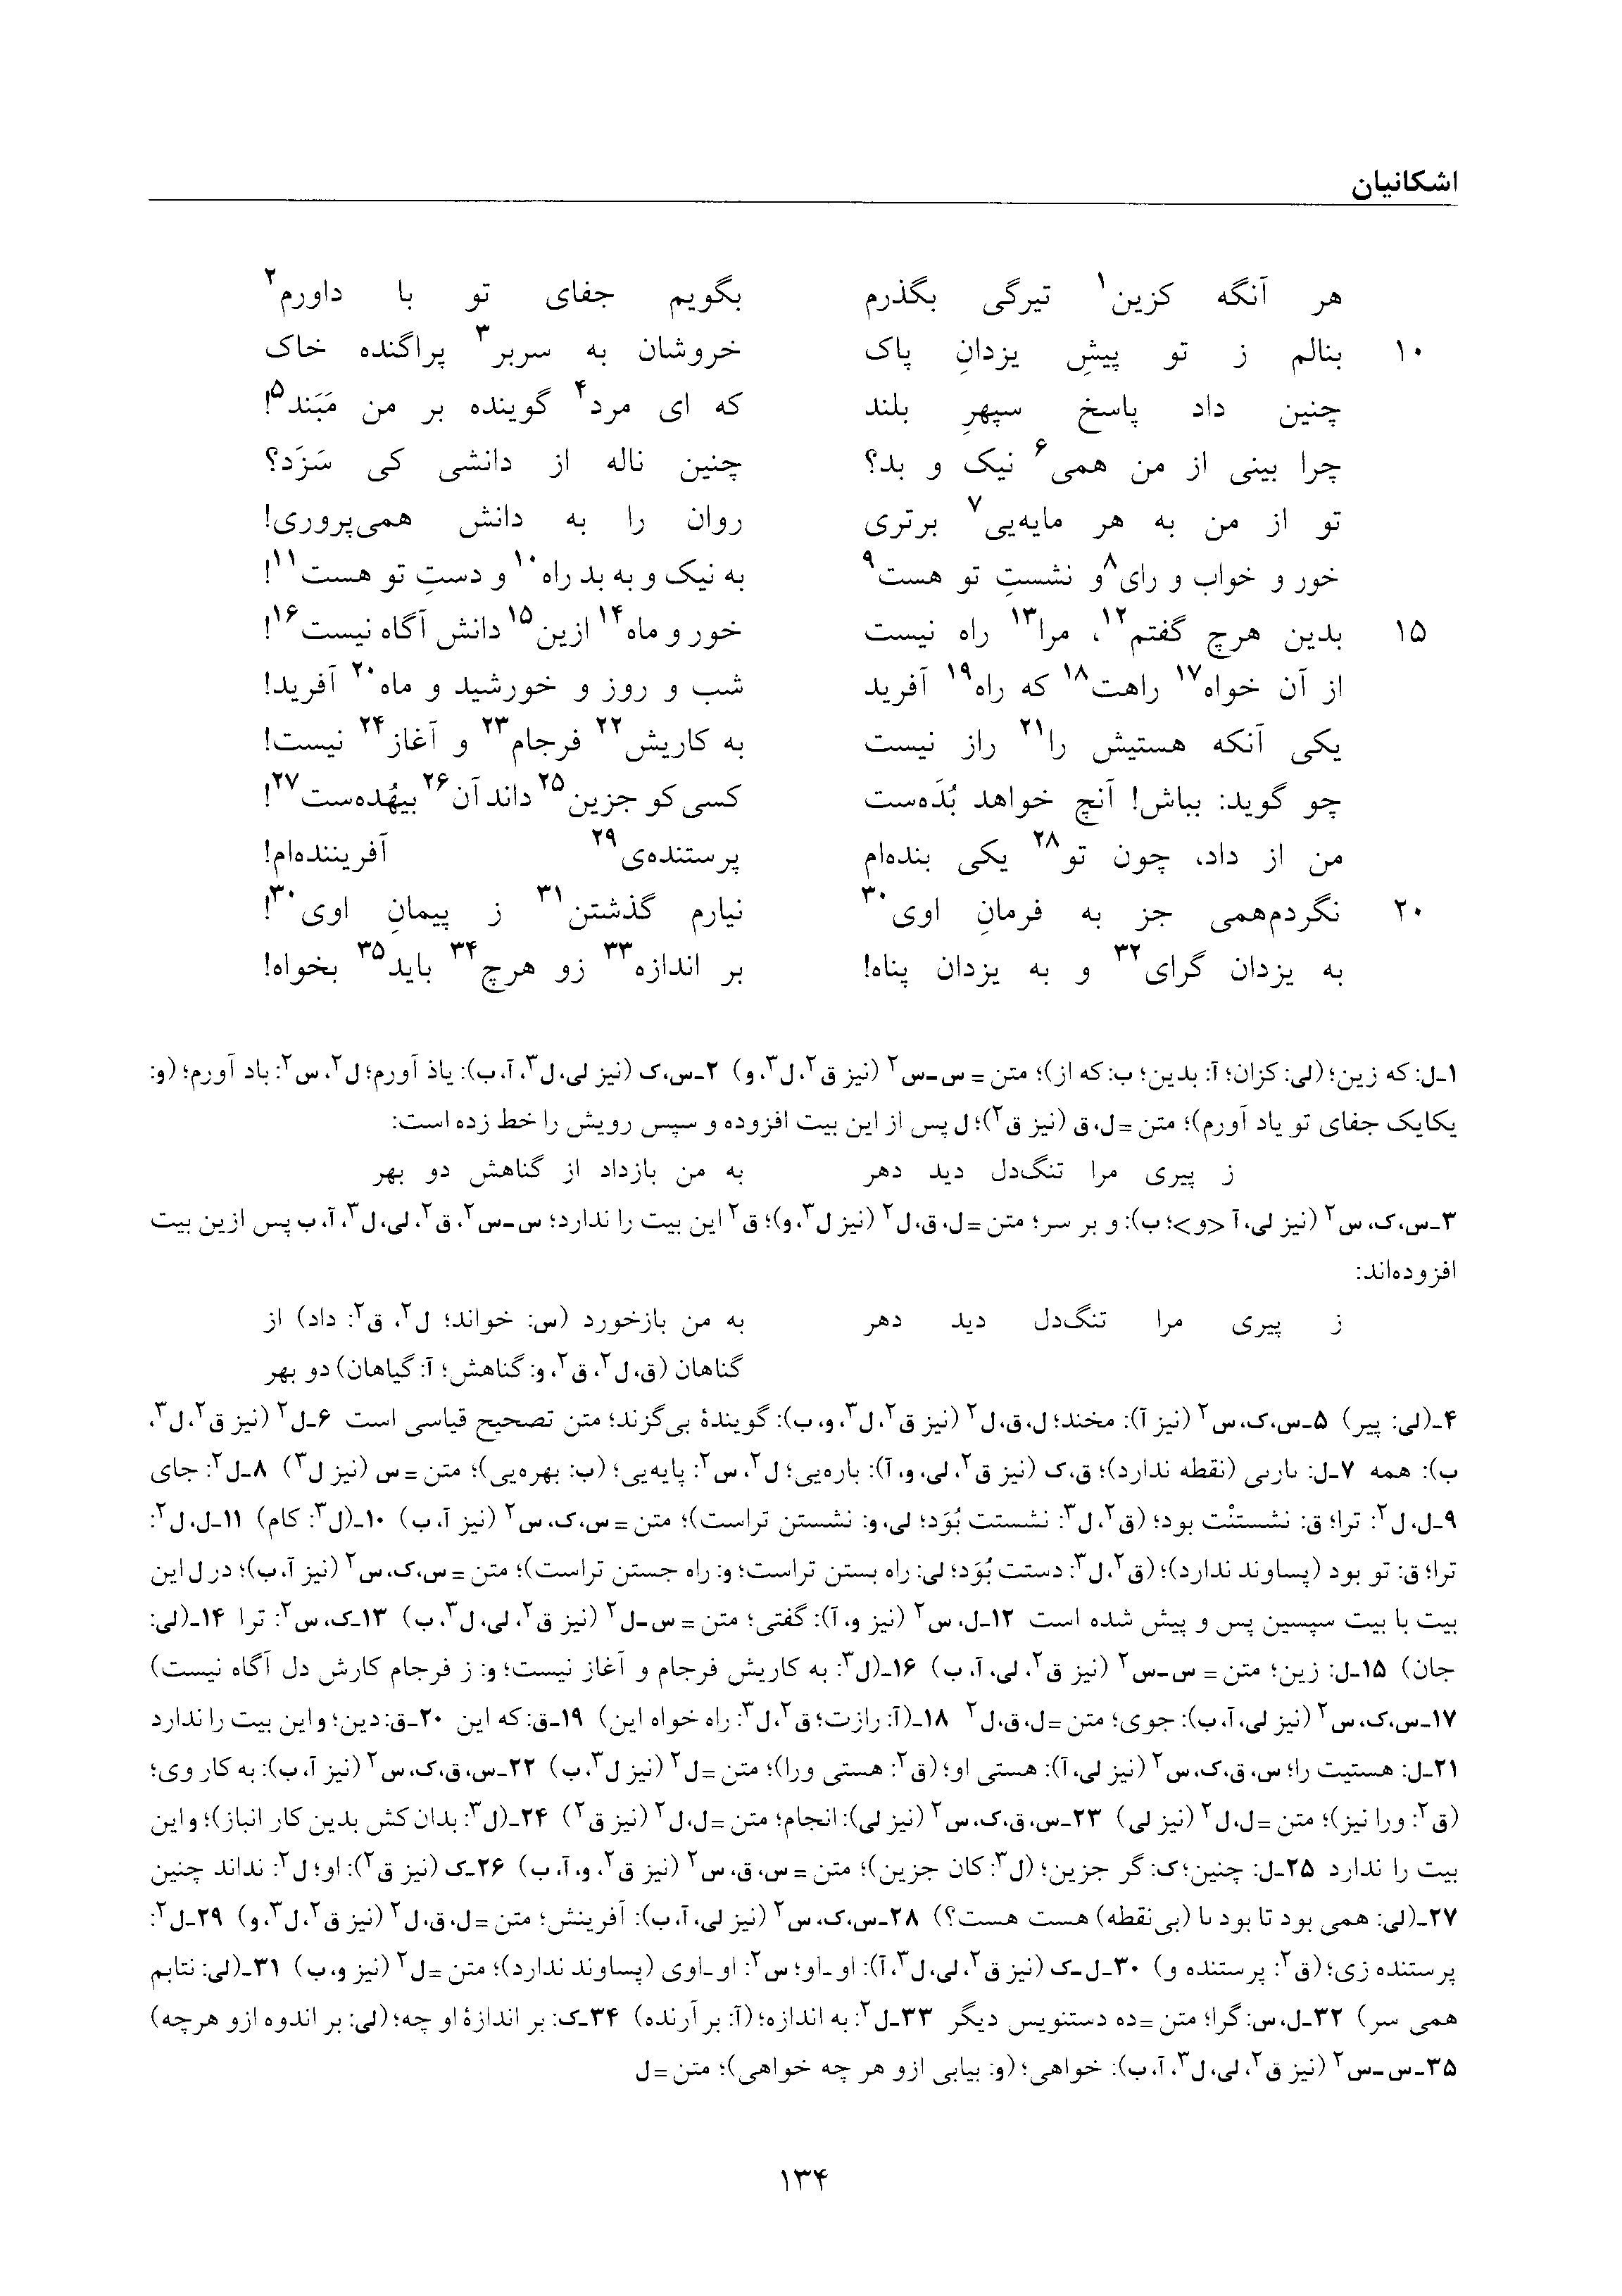 vol. 6, p. 134